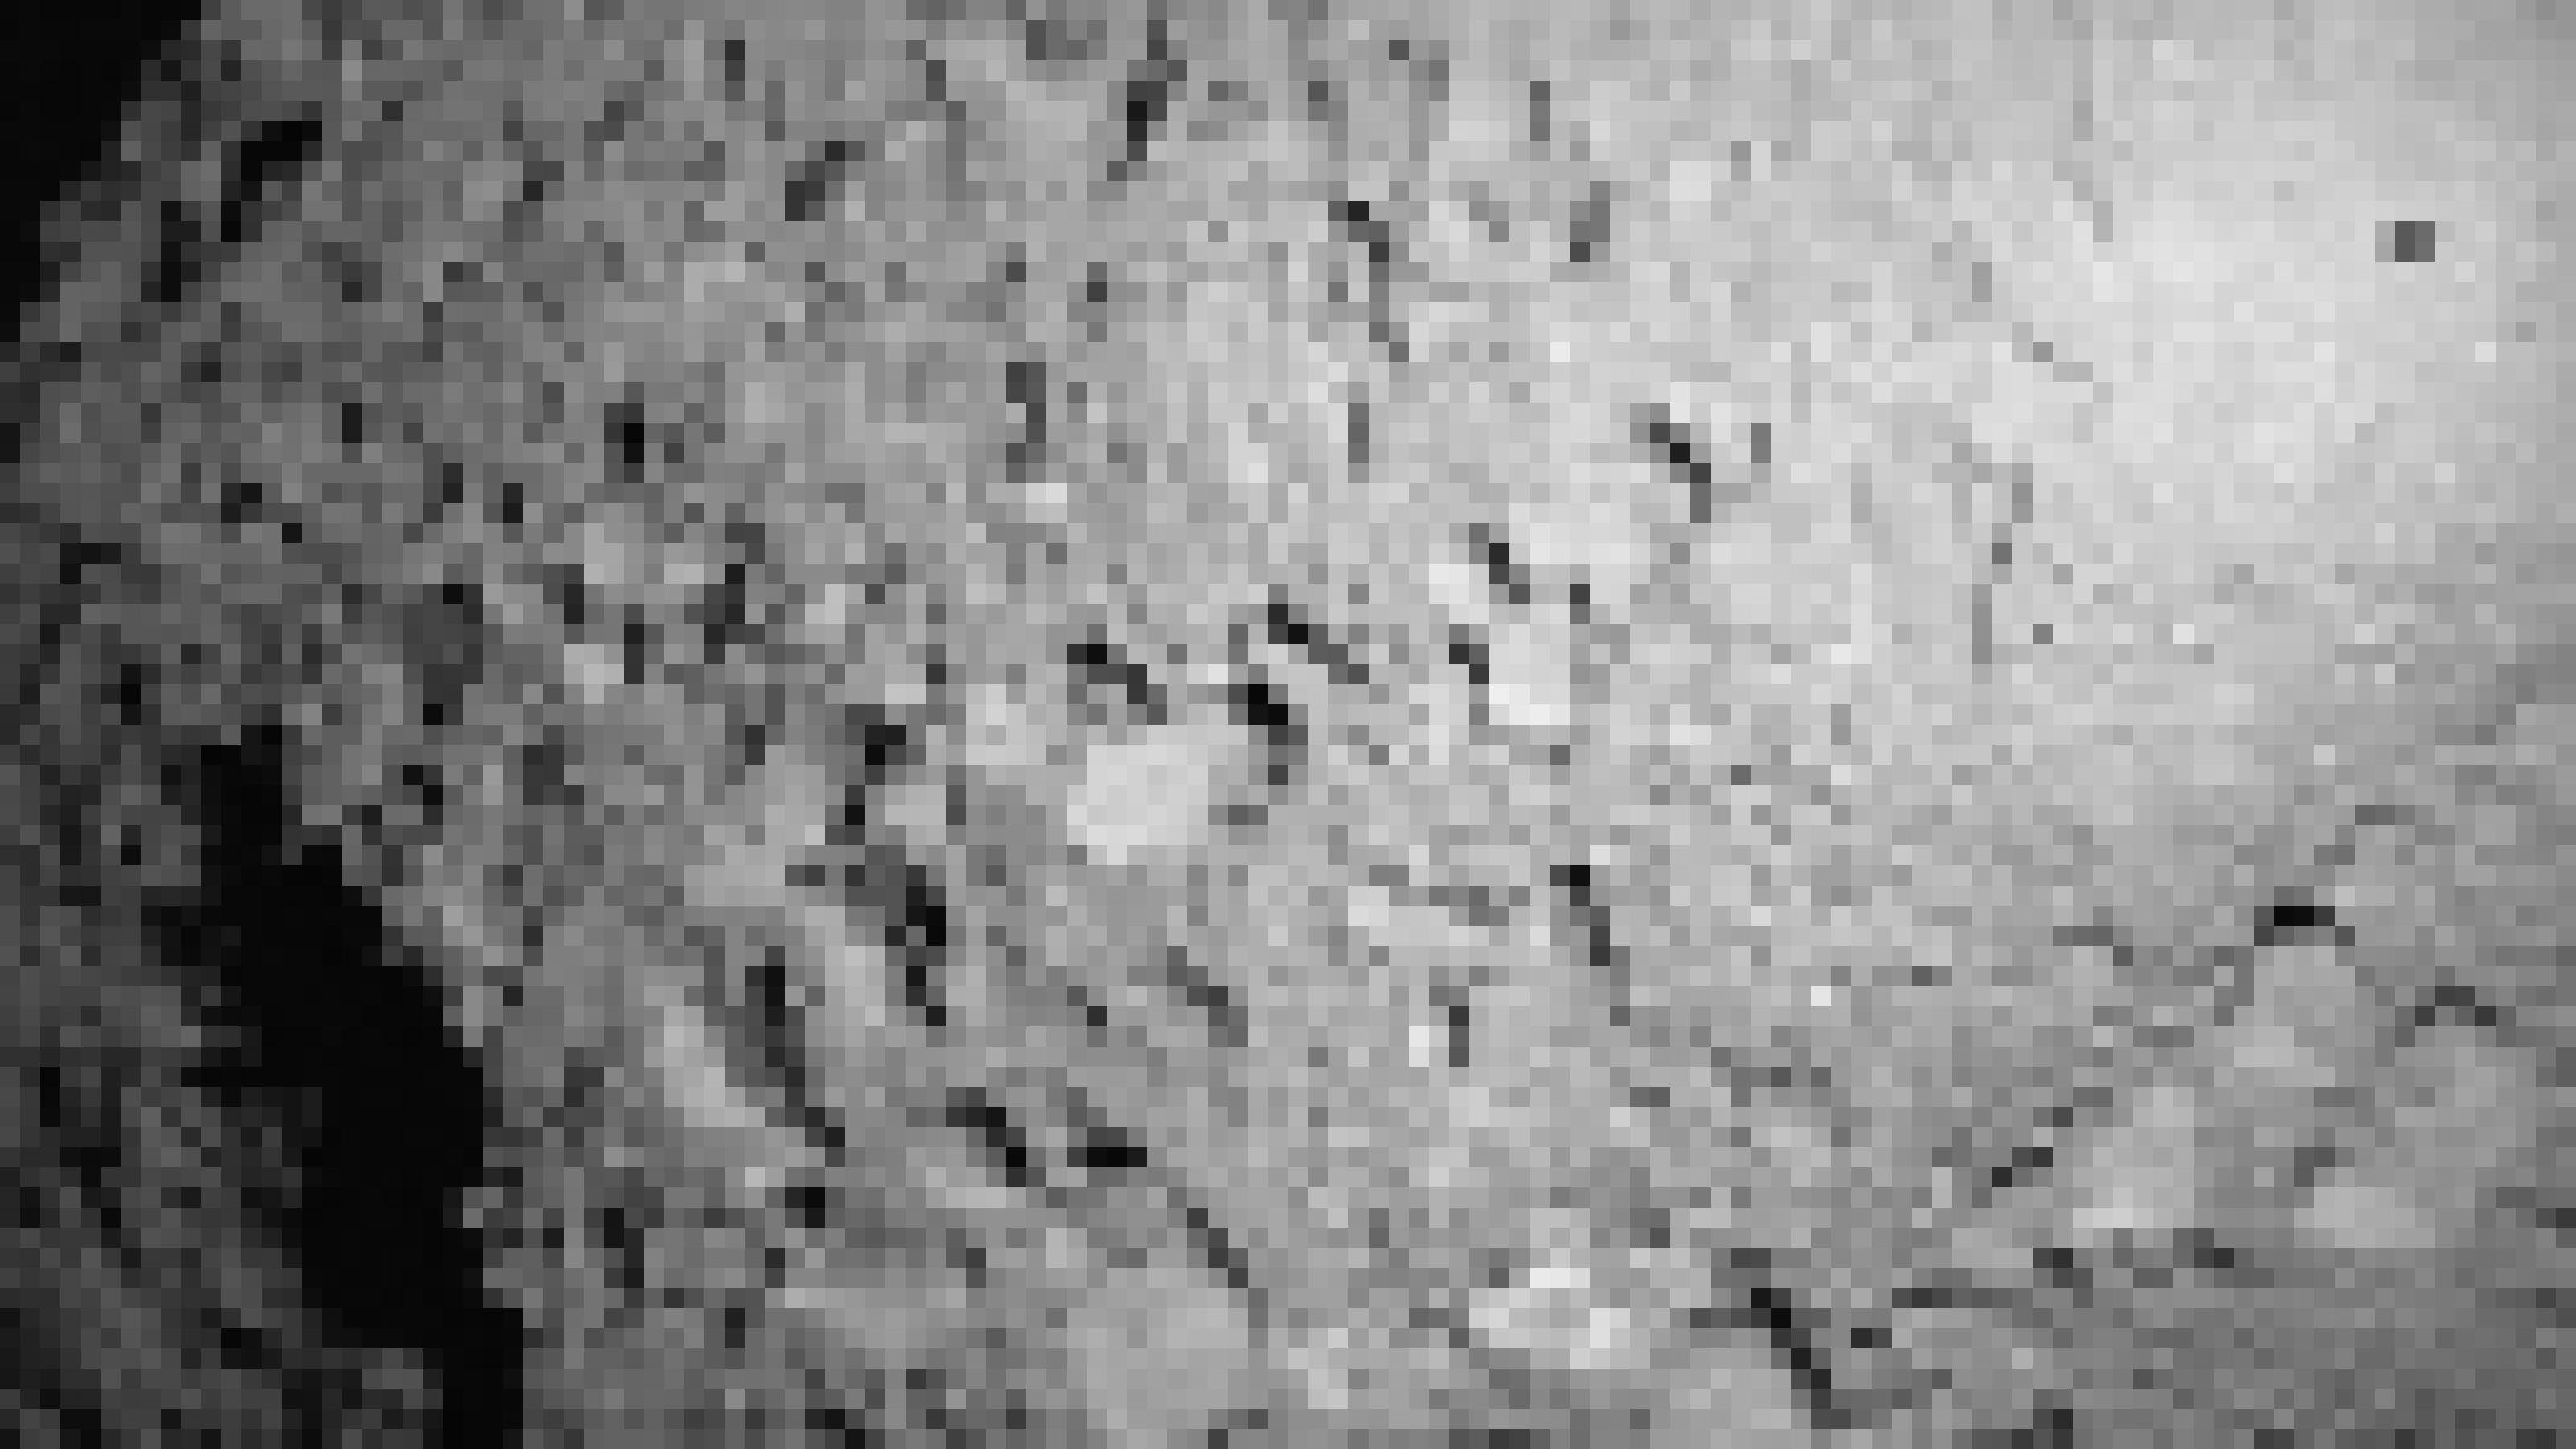 Oberfläche des Asteroiden Ryugu mit den Landern